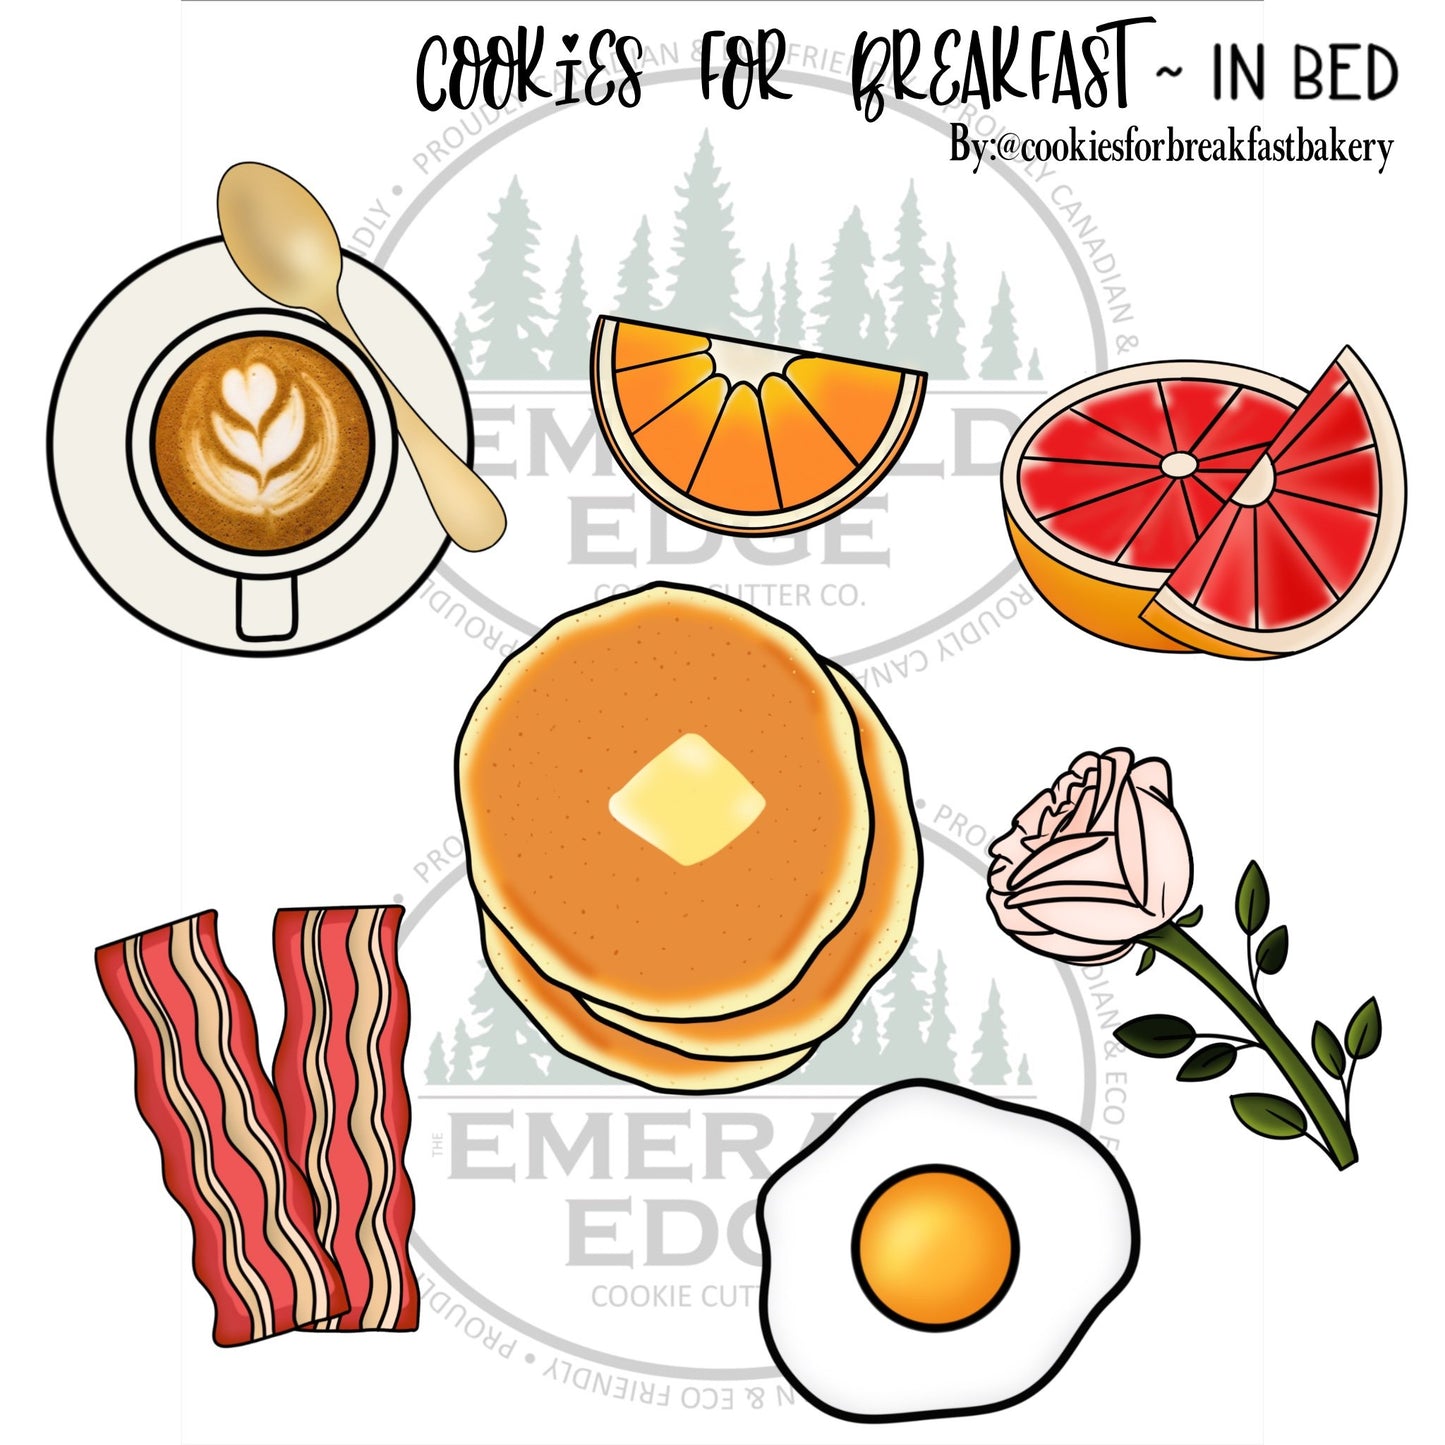 Cookies For Breakfast-In Bed ~ Grapefruit with Slice